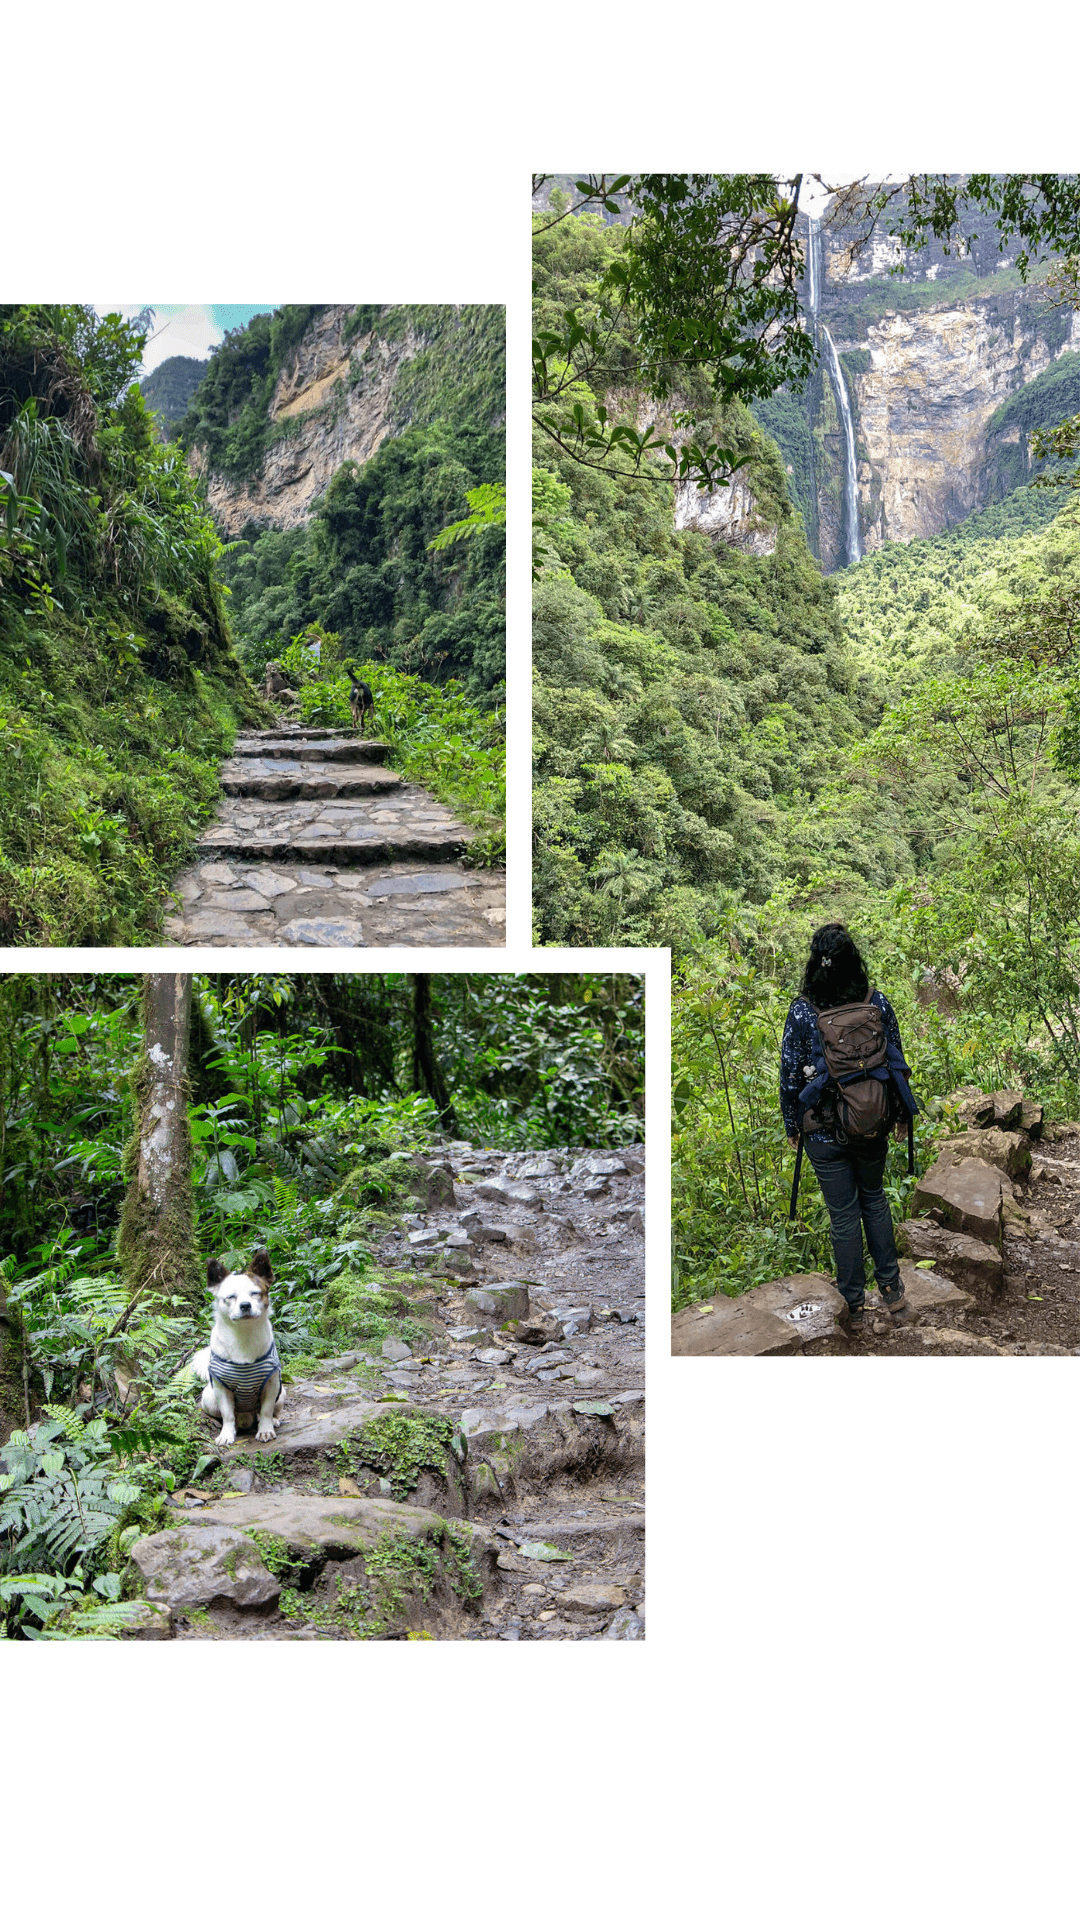 Wanderung zum Gocta Wasserfall, Highlight im Norden Perus